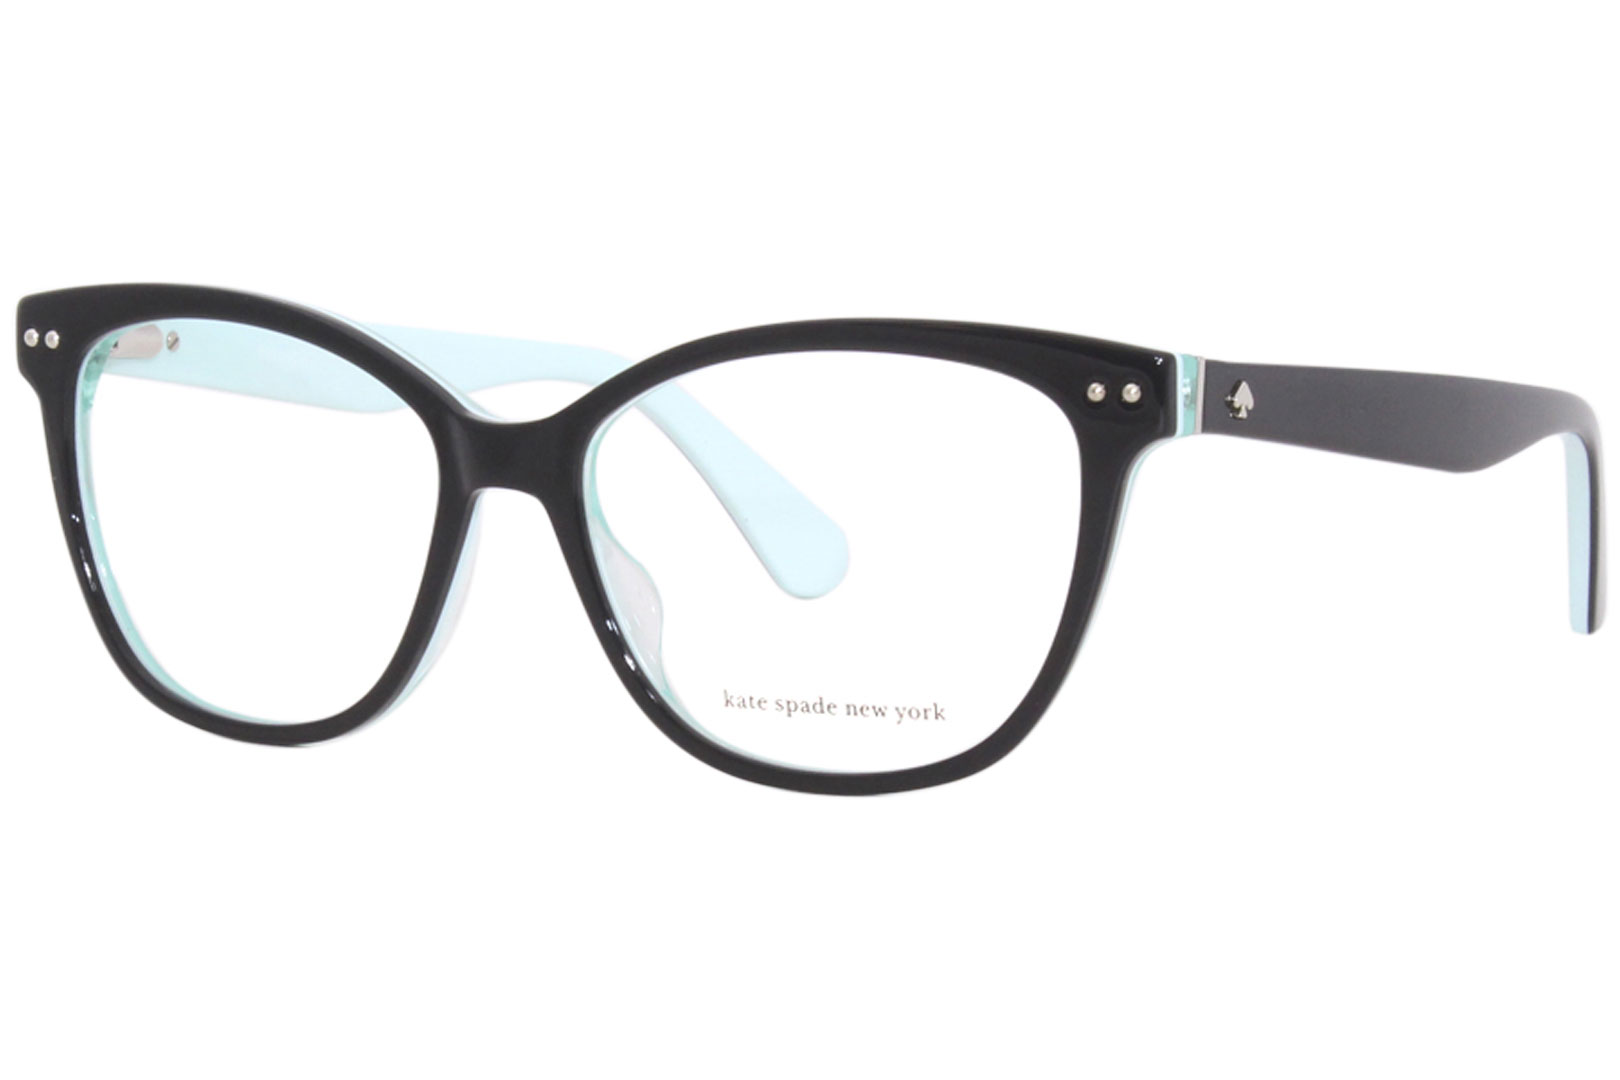 Kate Spade Adrie D51 Eyeglasses Women's Black/Blue Full Rim Square Shape  53mm 